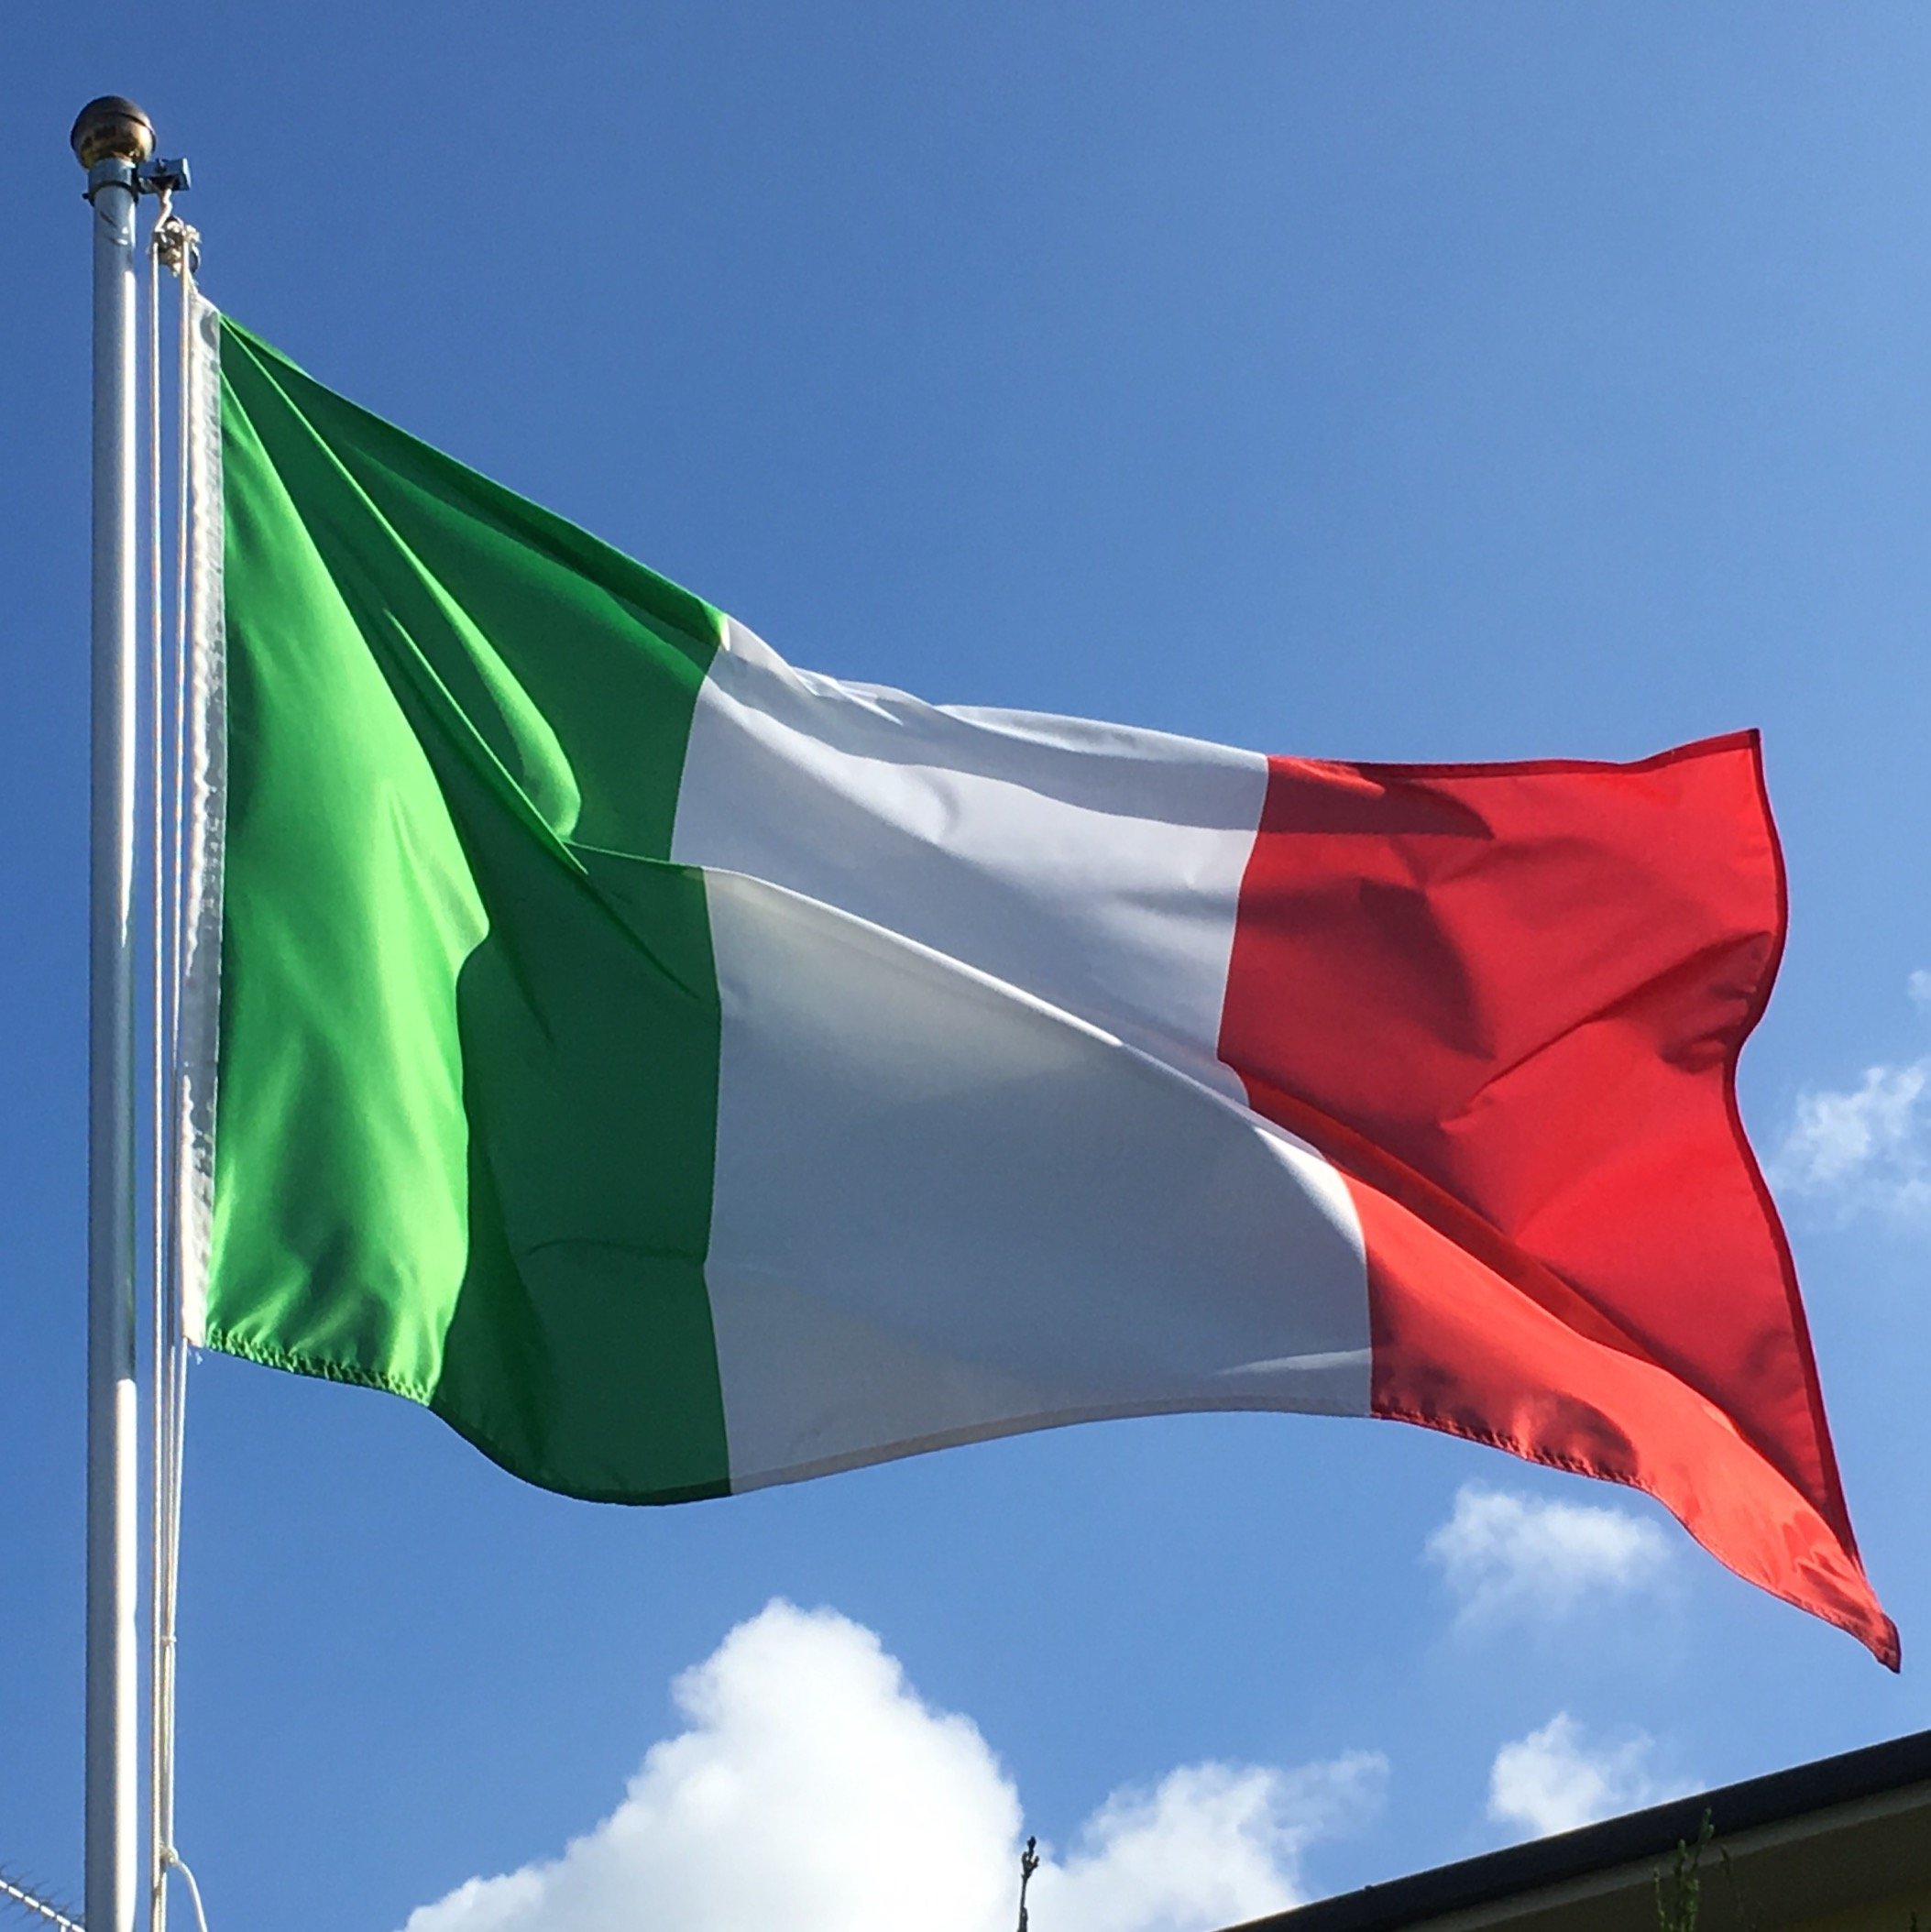 Bandiera Italiana in vendita, acquista il tricolore | Bandiere.it